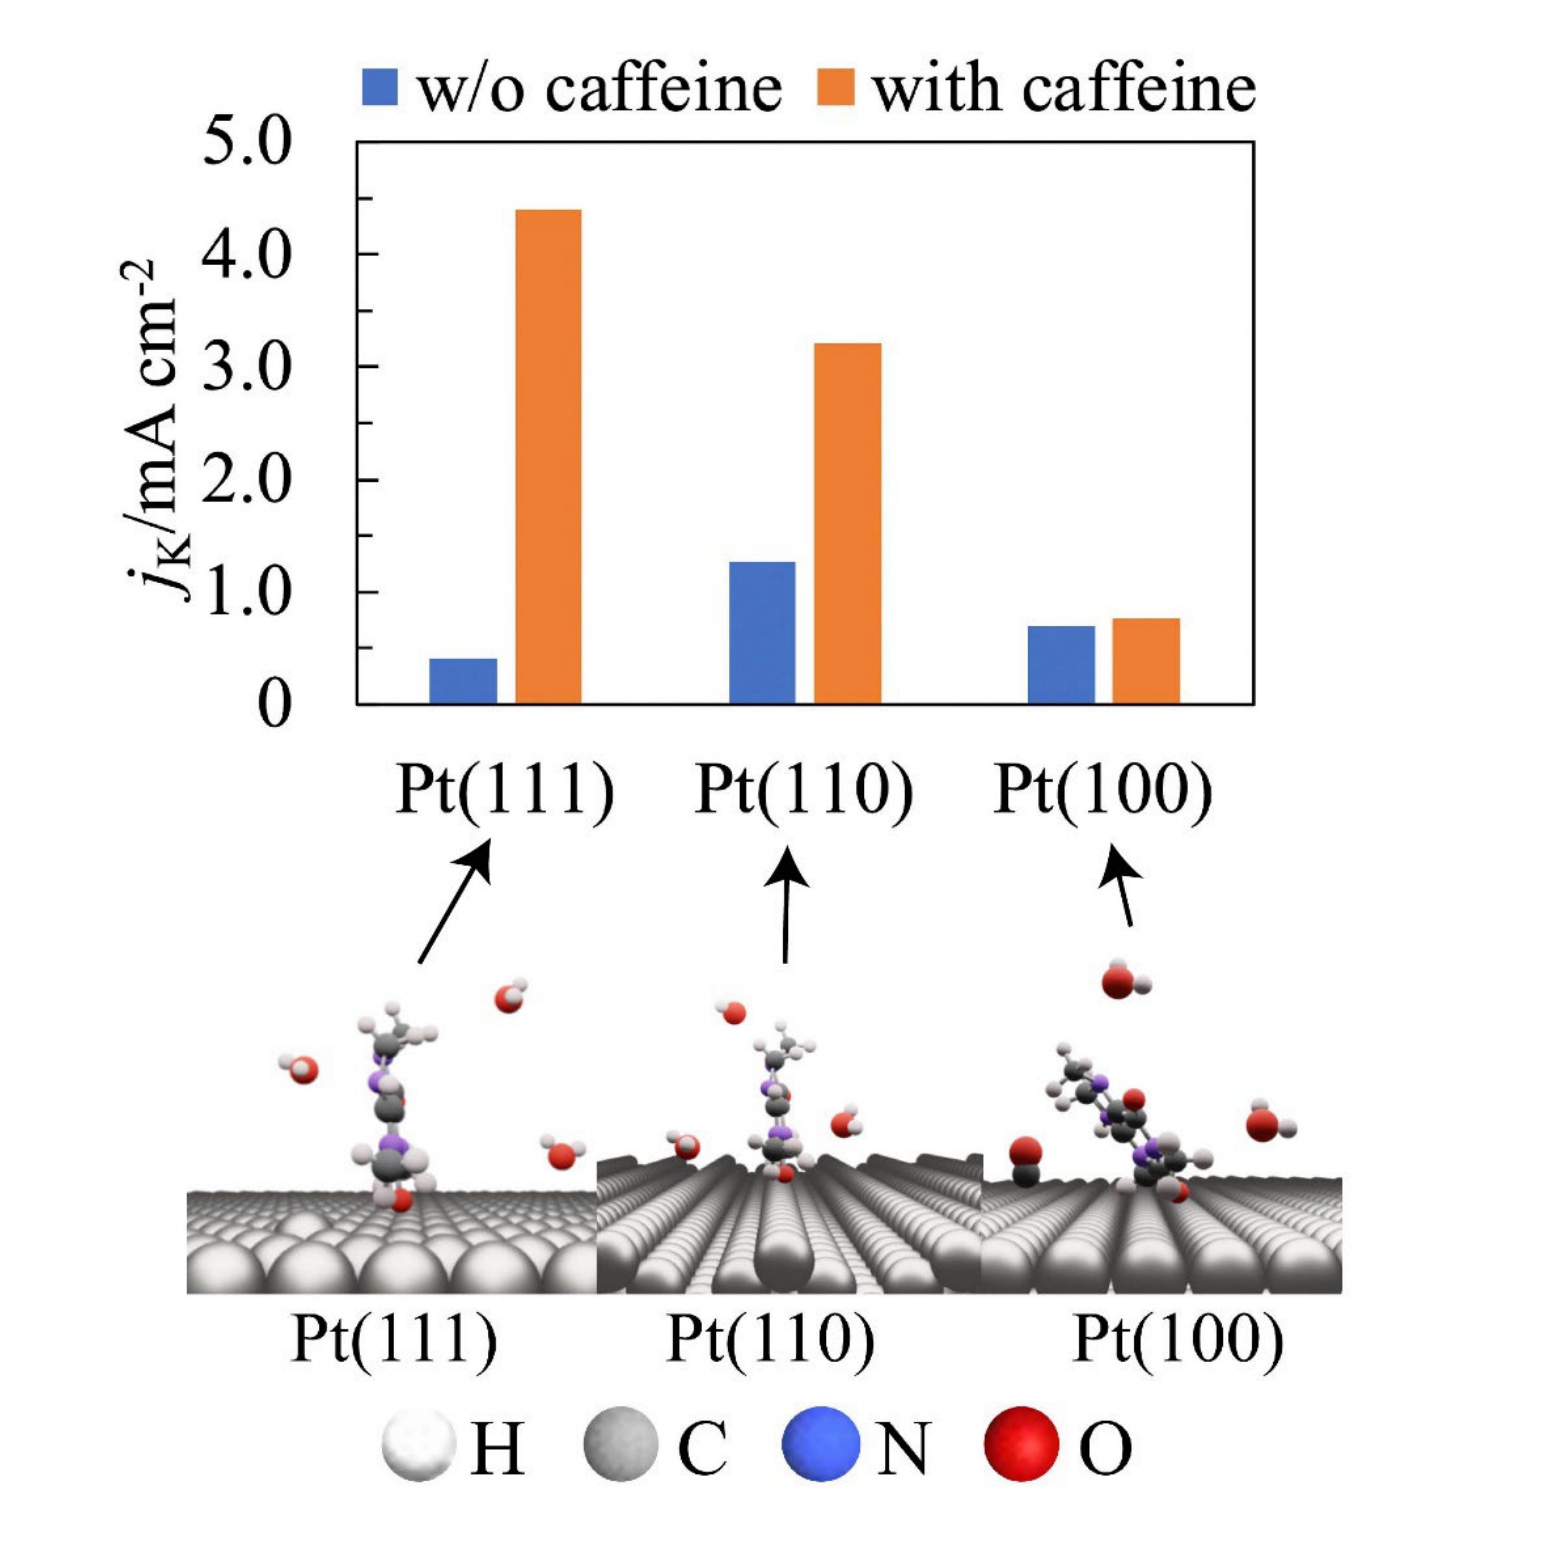 咖啡因對鉑 (Pt) 電極氧氣還原反應活性的影響。定義良好的 Pt 單晶電極上吸附的咖啡因結構以及咖啡因改性前後燃料電池空氣電極的活性。圖片來源：千葉大星野長宏教授 